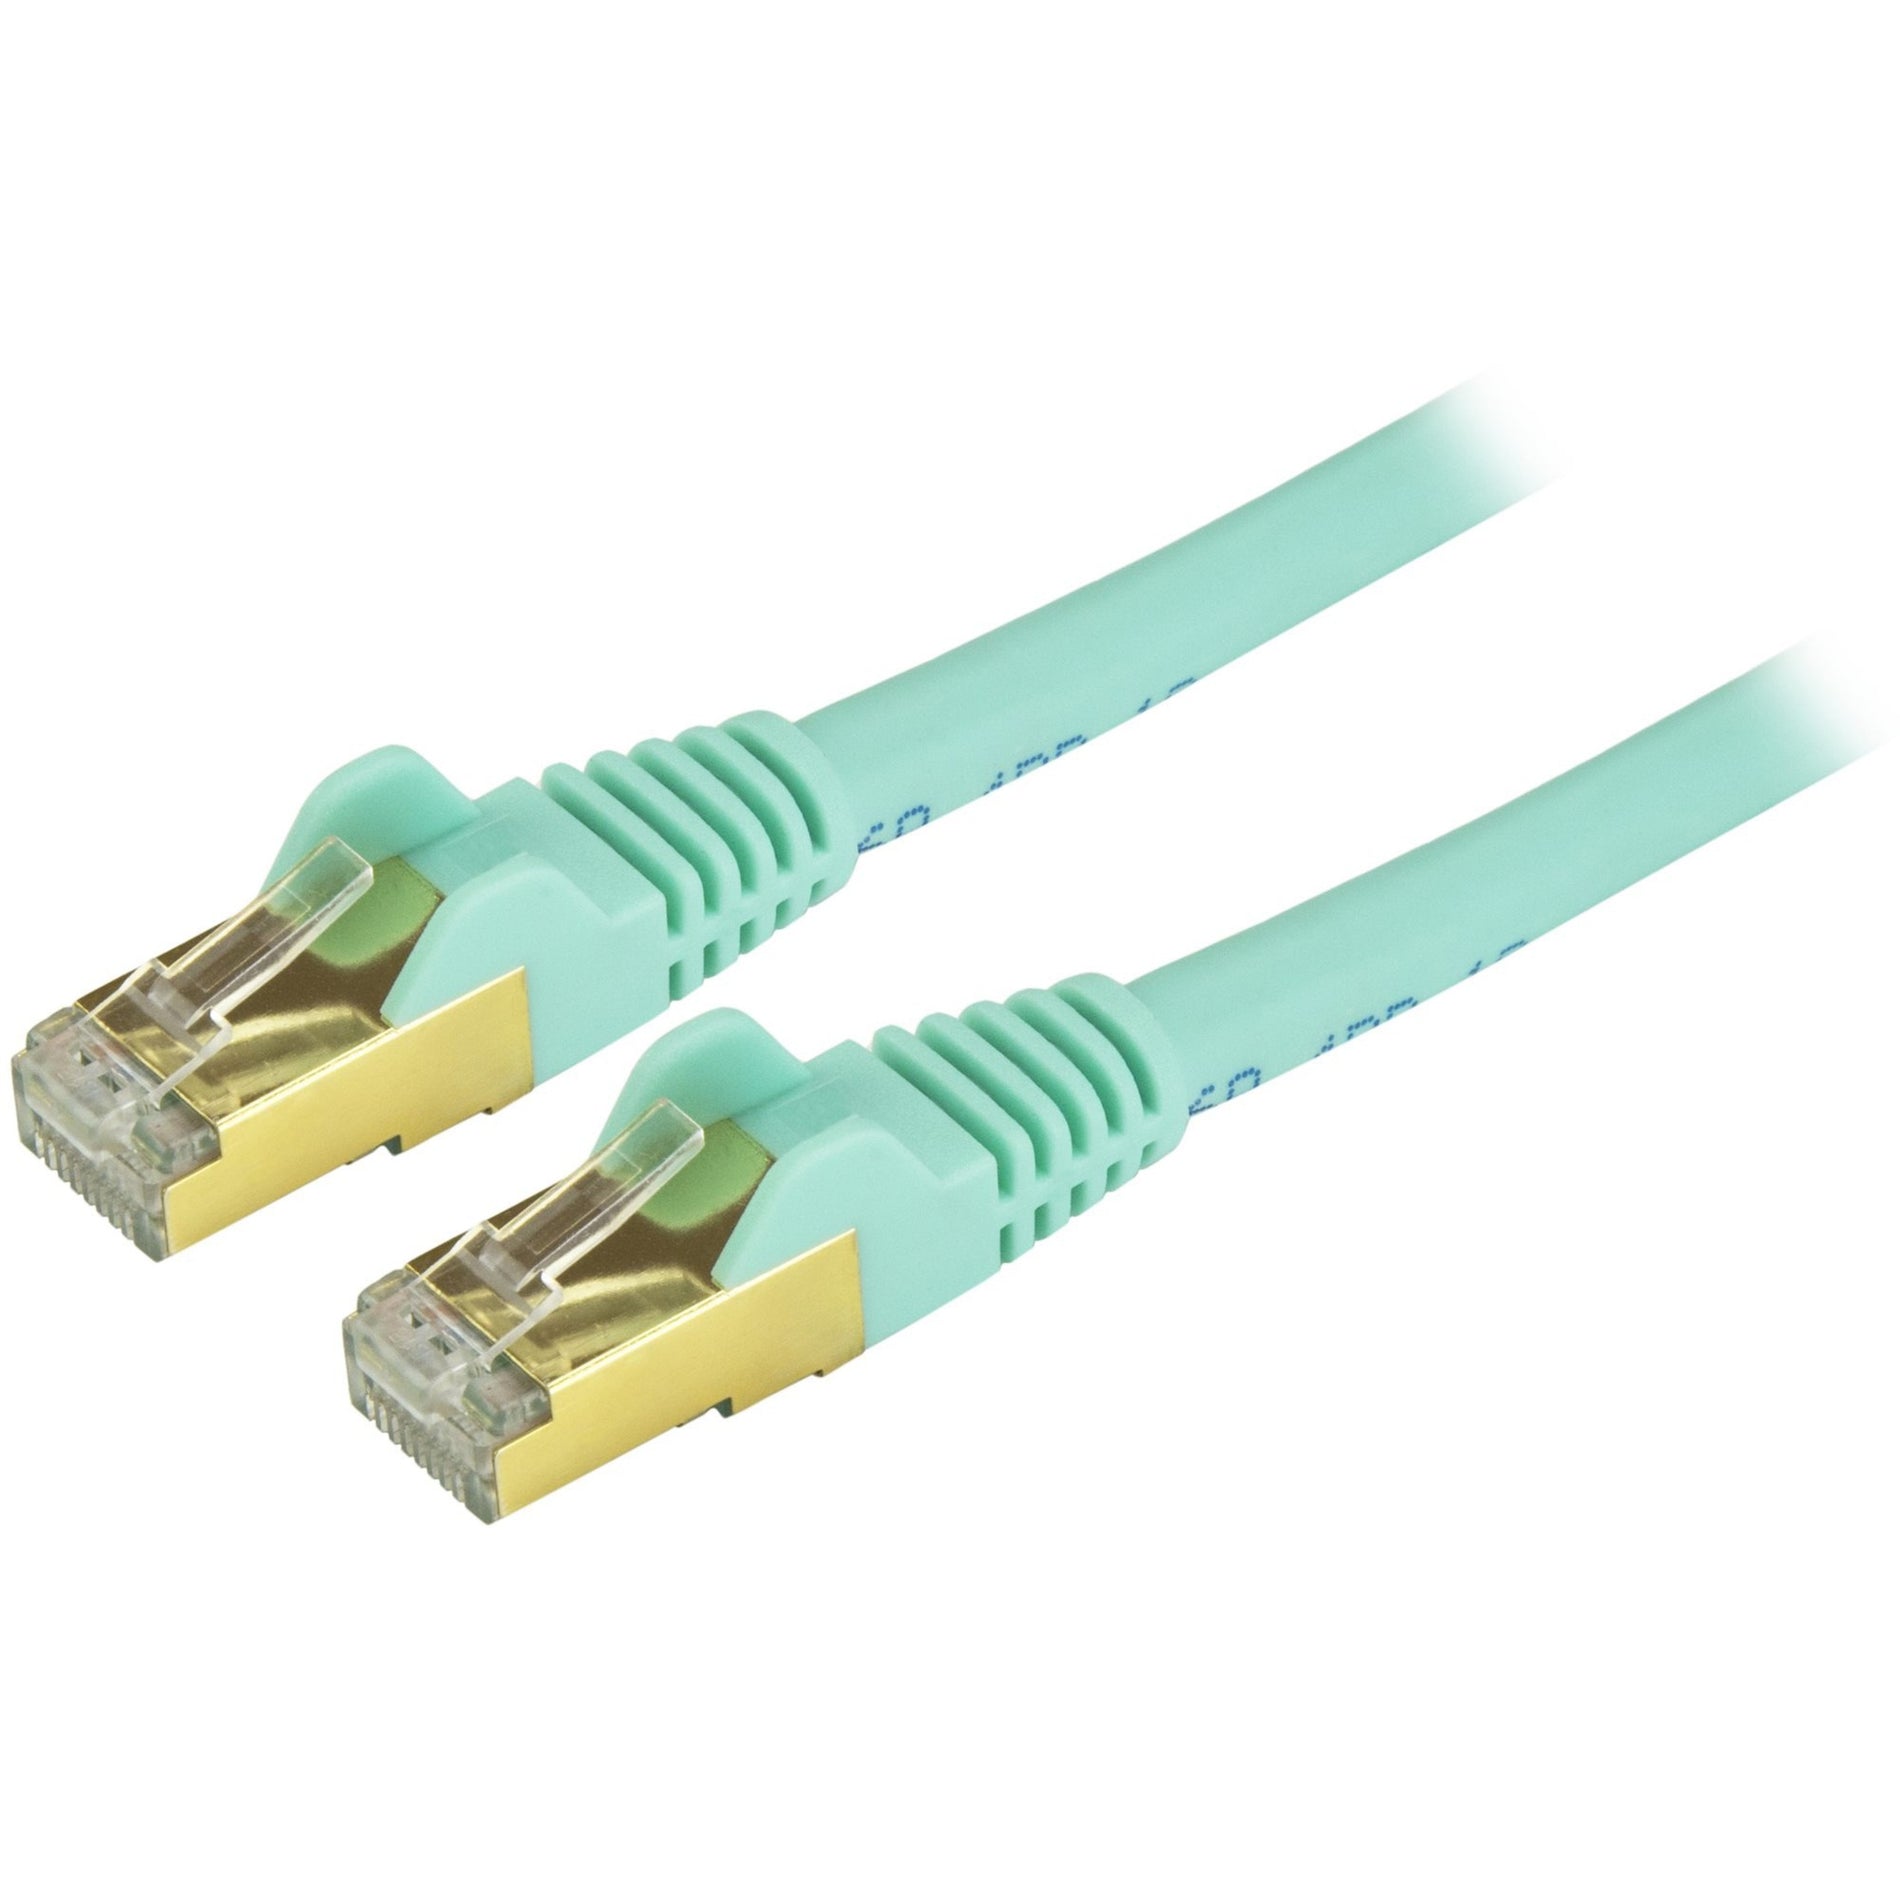 StarTech.com C6ASPAT9AQ Cable de parche Ethernet Cat6a - Blindado (STP) - 9 pies Aqua Cordón Ethernet RJ45 sin enganches. Traduce: Shielded Aqua y Snagless. Marca: StarTech.com - Traducción: EstrellaTécnica.com